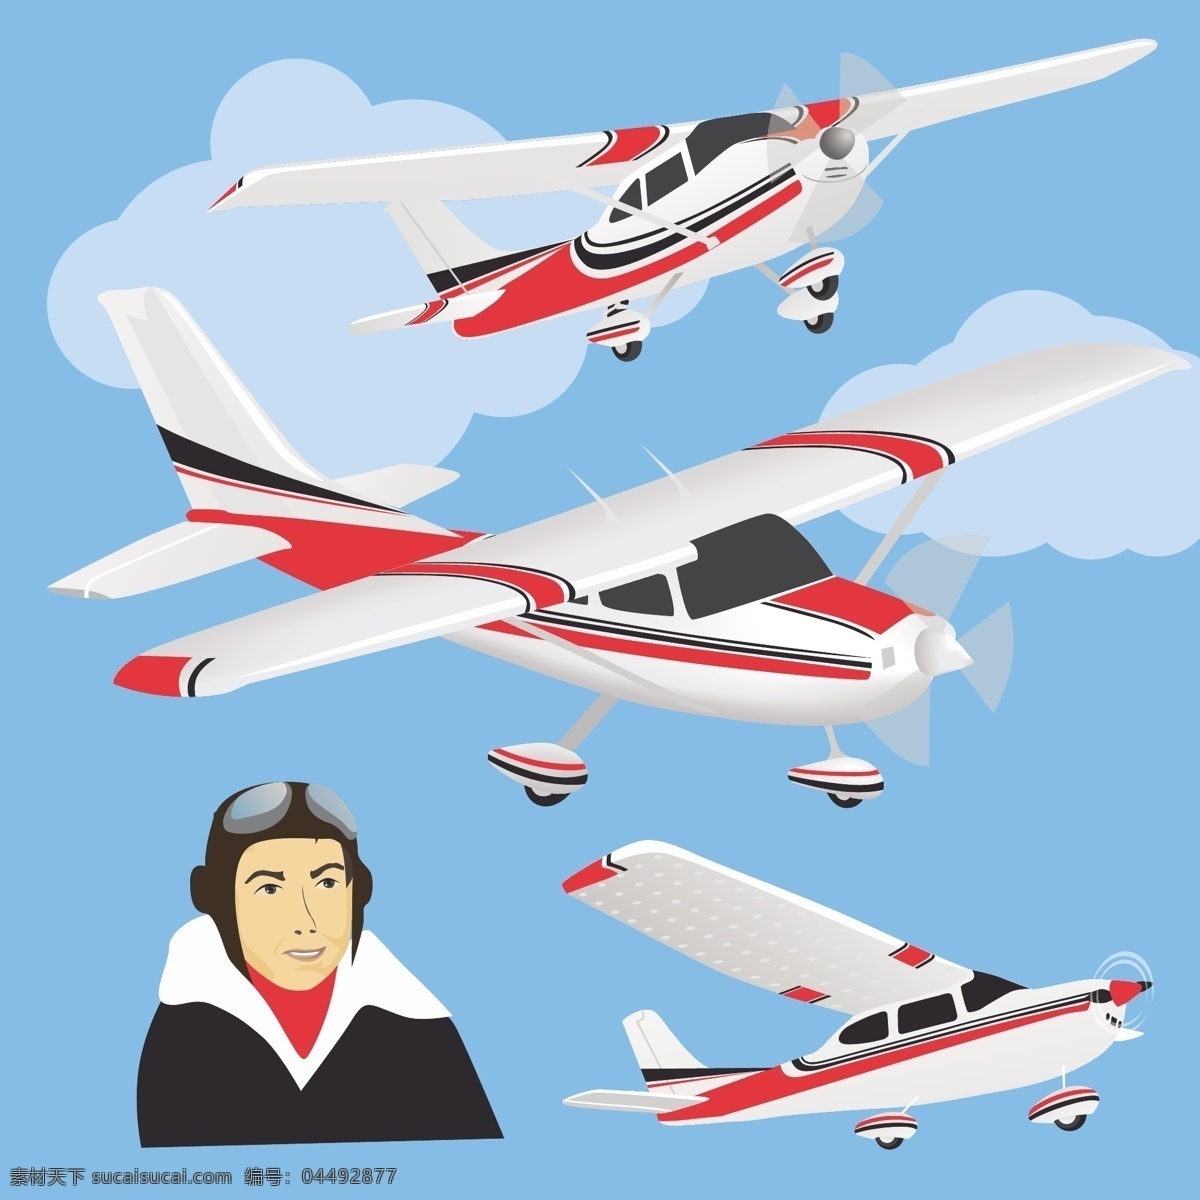 飞机 私人飞机 飞行员 喷气式飞机 航班 客机 波音 专机 支线飞机 大飞机 交通工具 现代科技